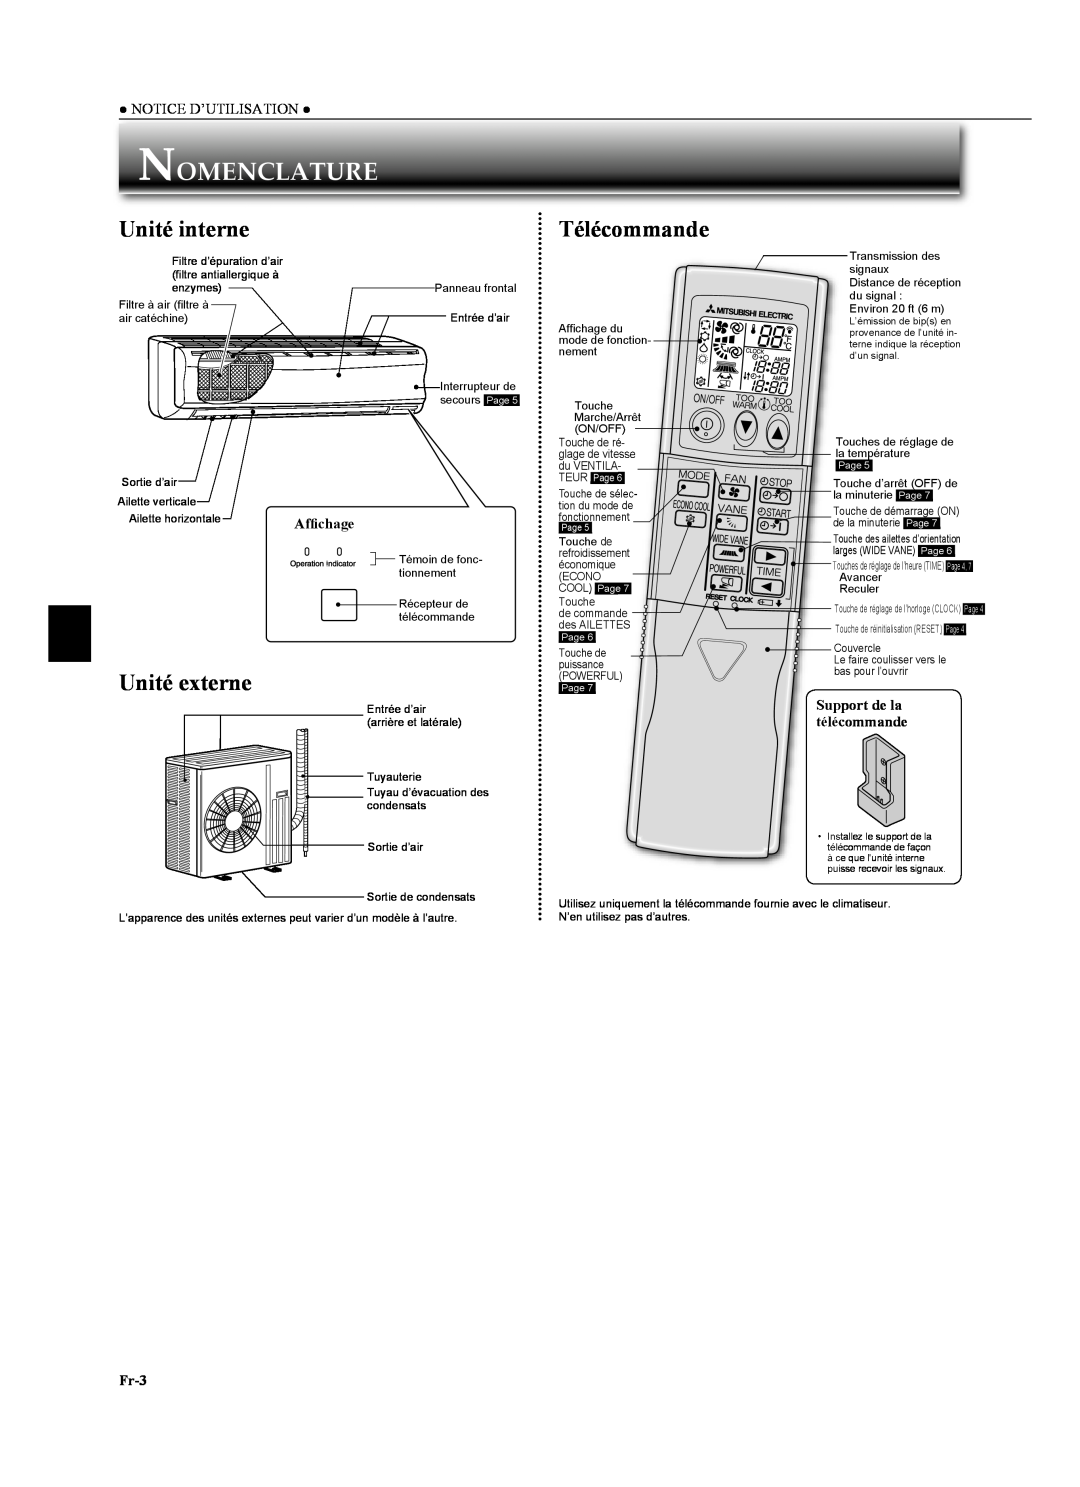 Mitsubishi Electronics MSZ-GA24NA Nomenclature, Unité interne, Unité externe, Afﬁchage, Fr-3, Télécommande, rt de la 